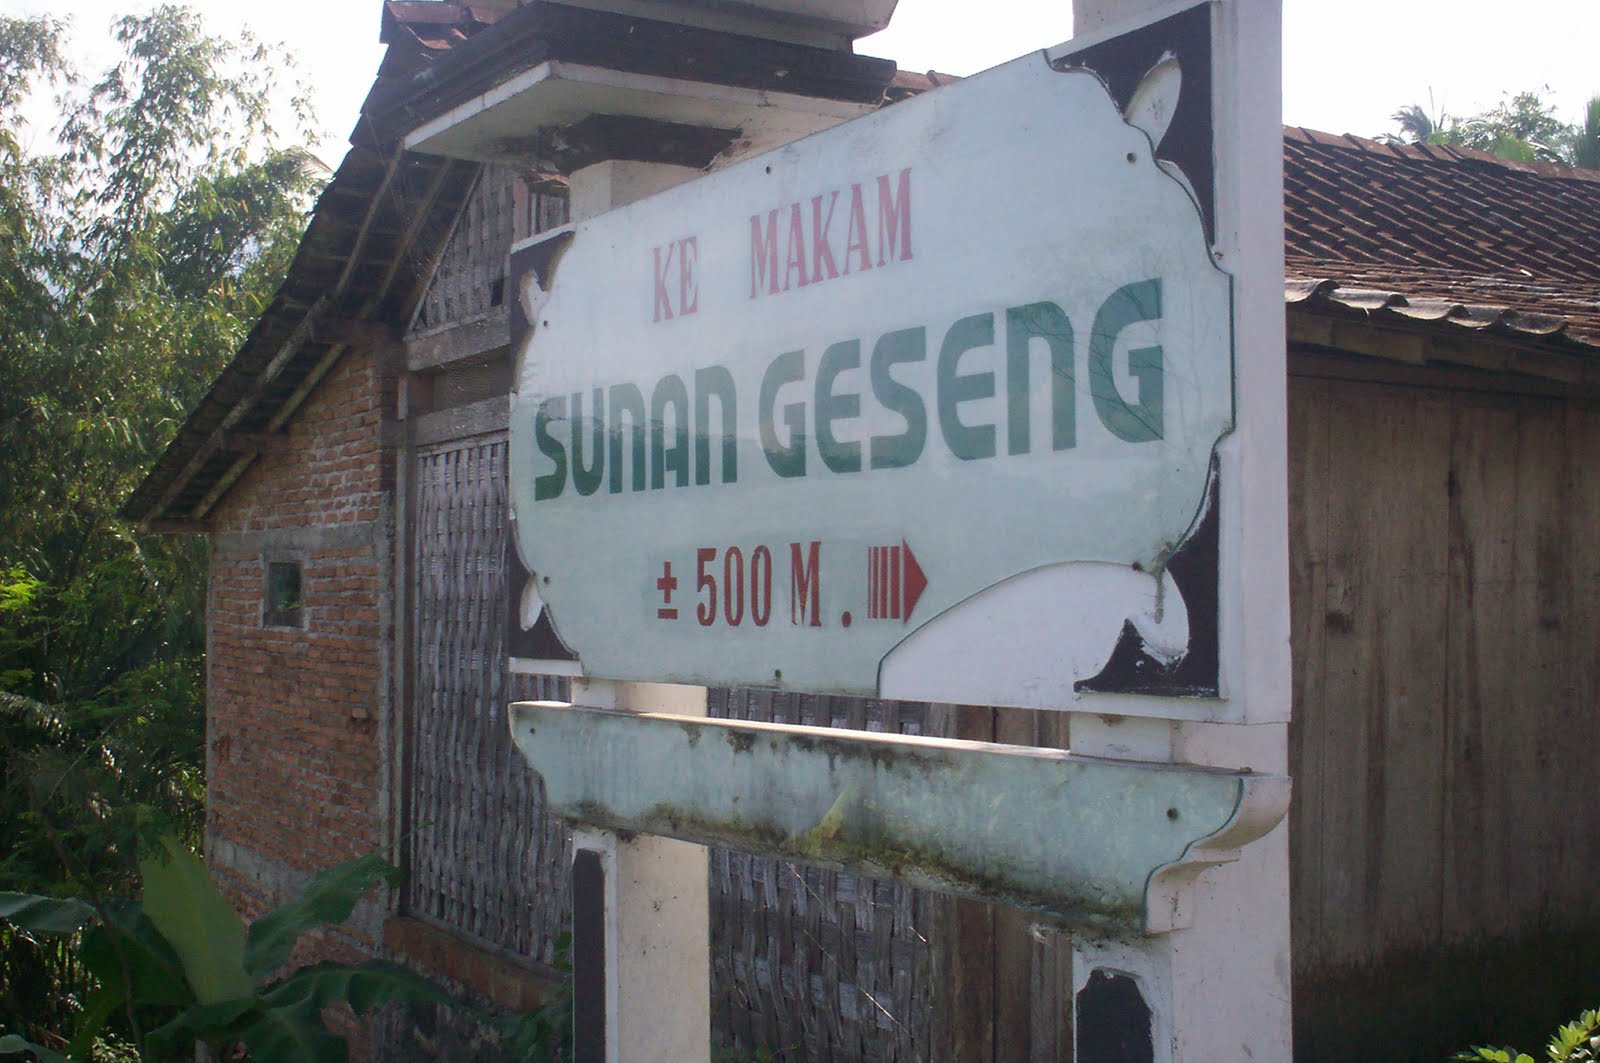 Makam Sunan Geseng : Harga Tiket, Foto, Lokasi, Fasilitas dan Spot